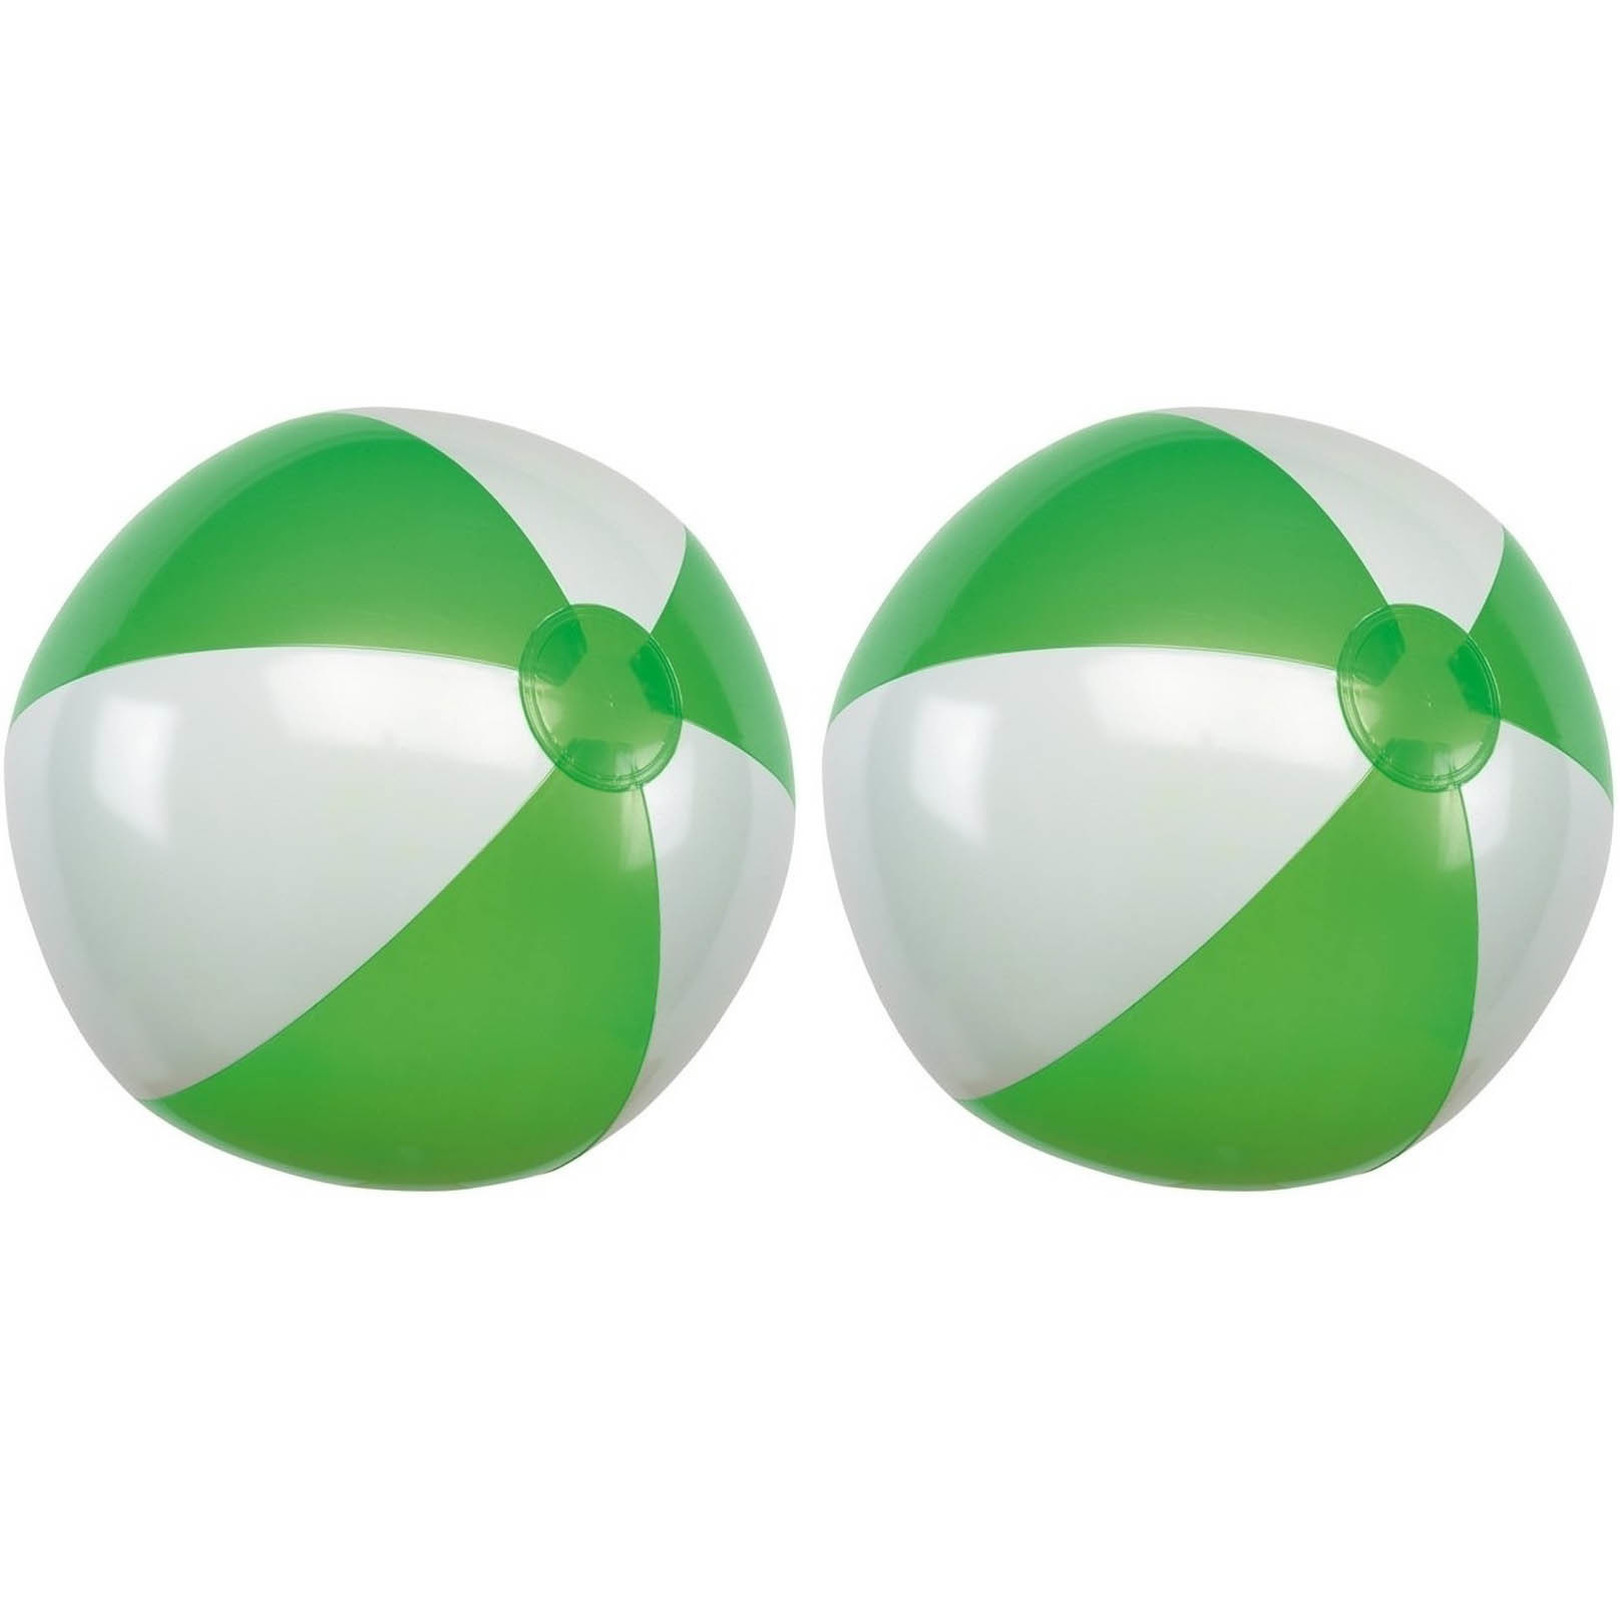 2x Waterspeelgoed groen-witte strandballen 28 cm